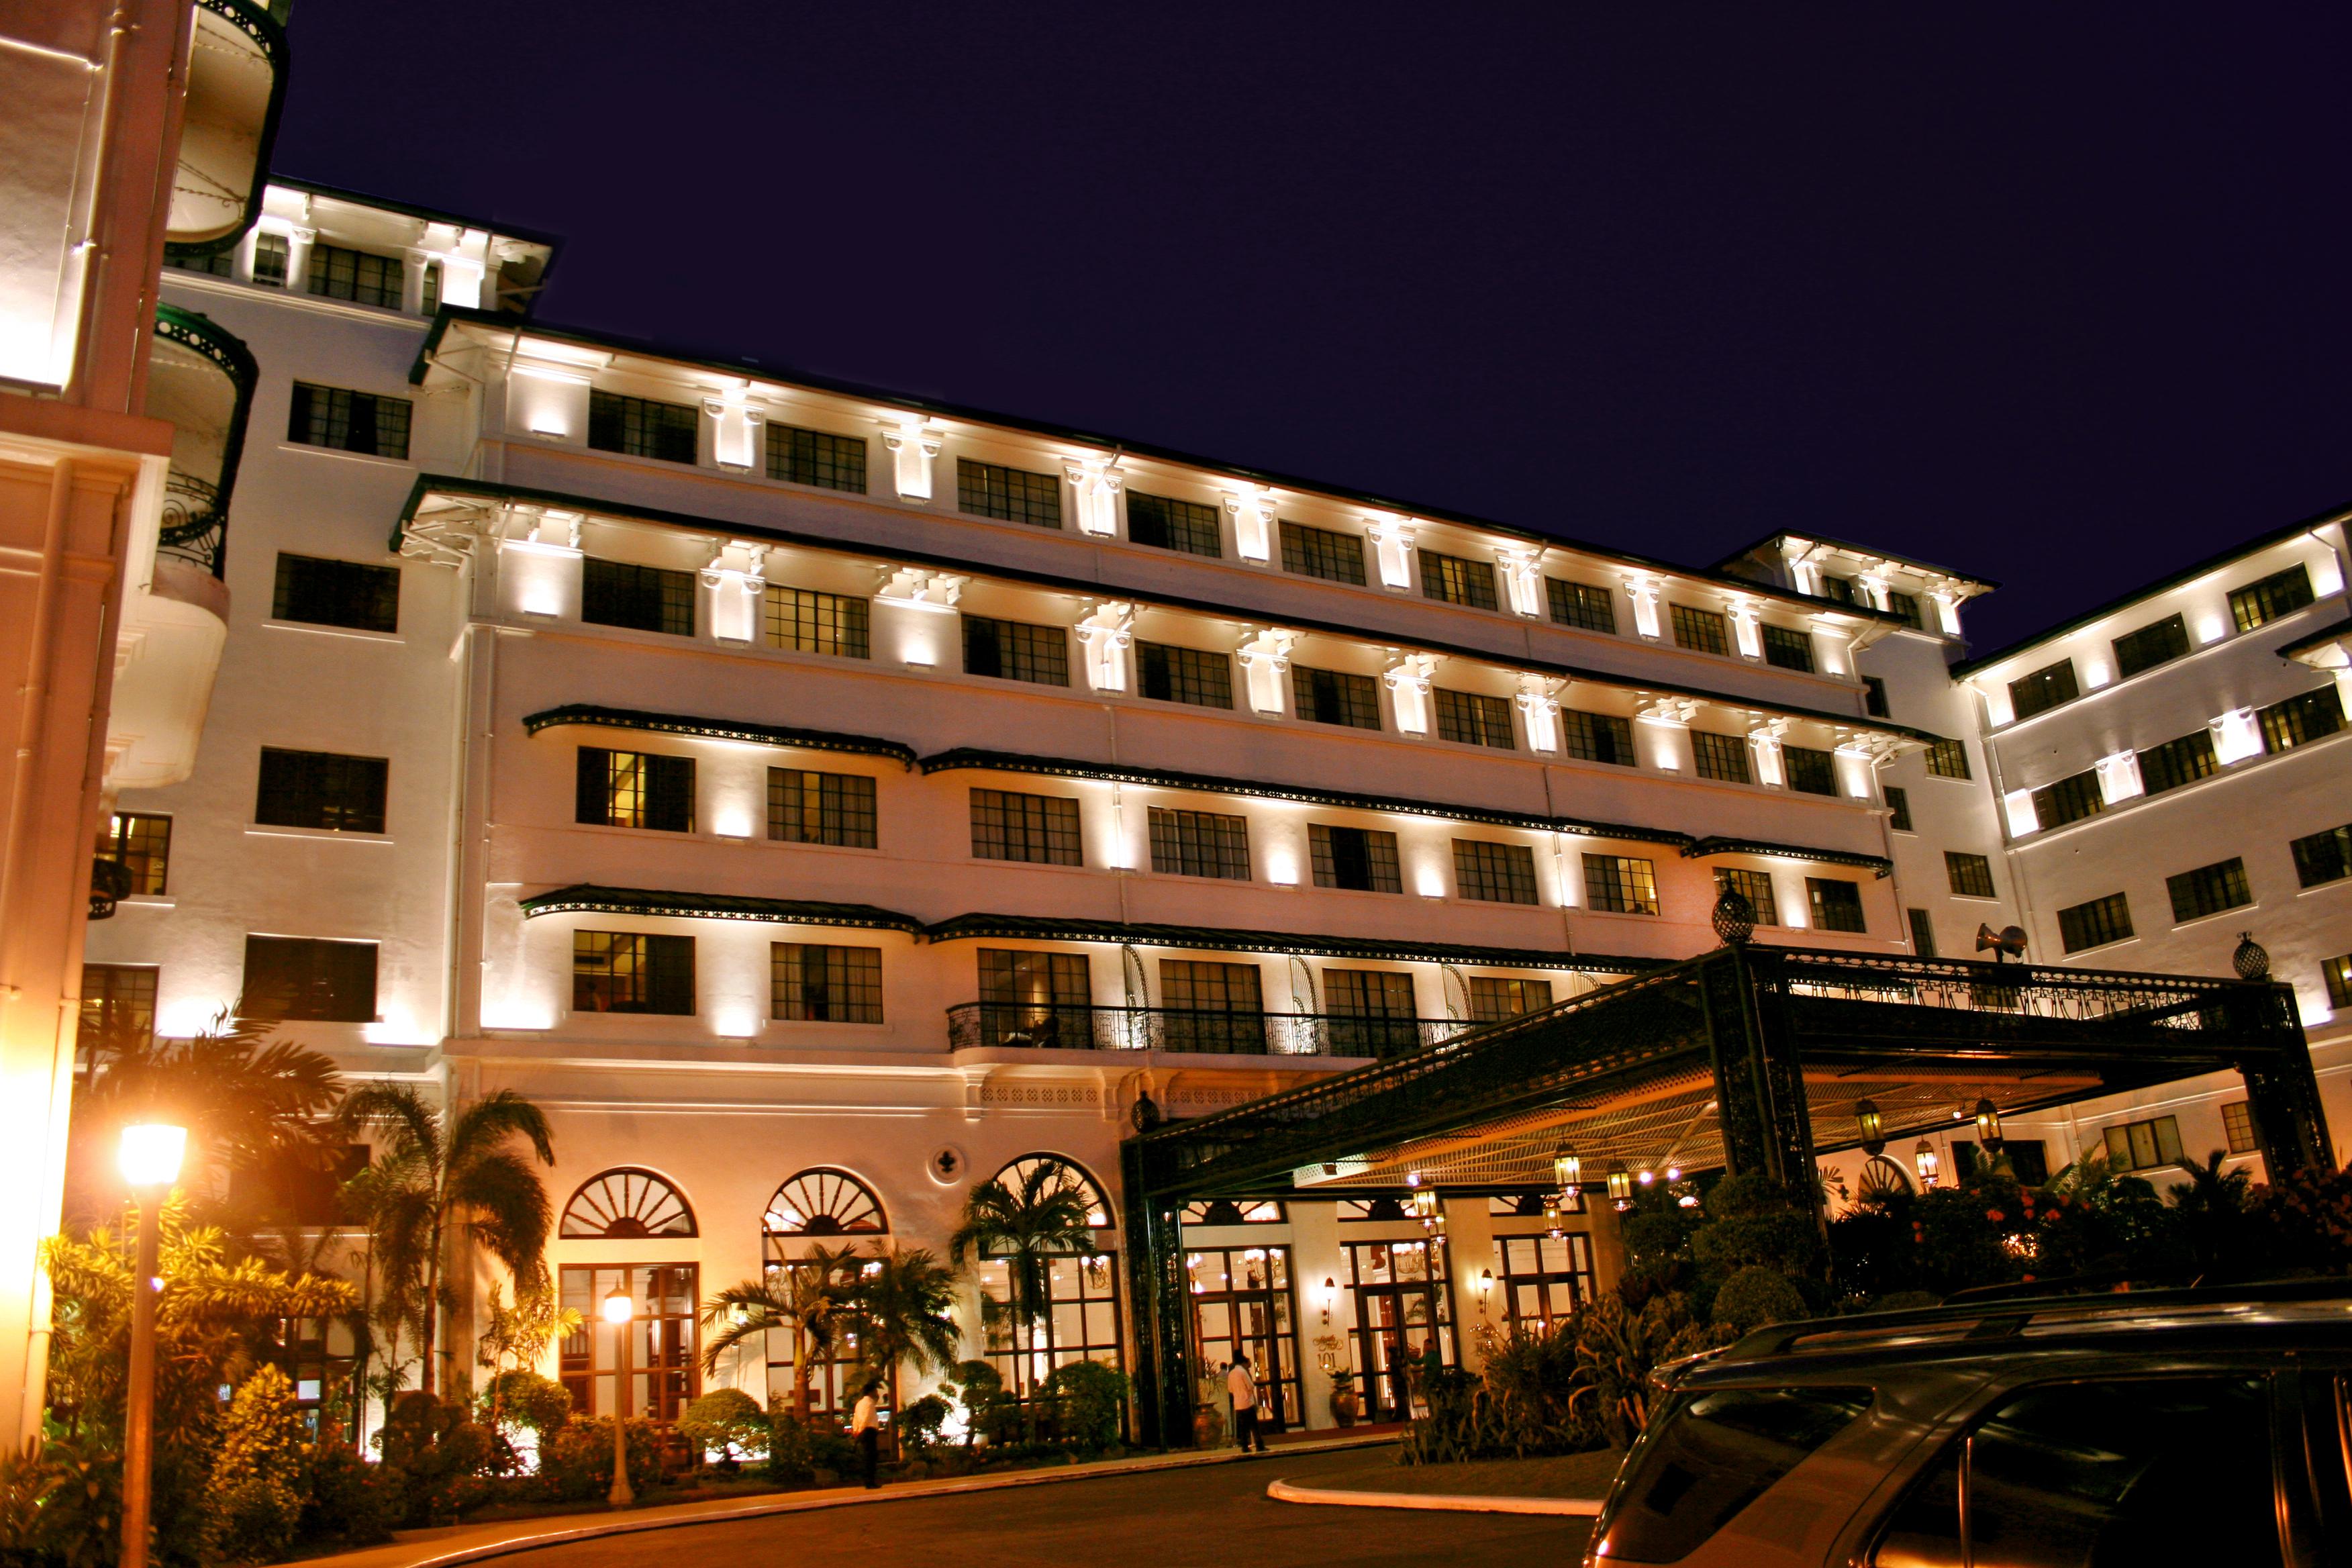 The Manila Hotel image